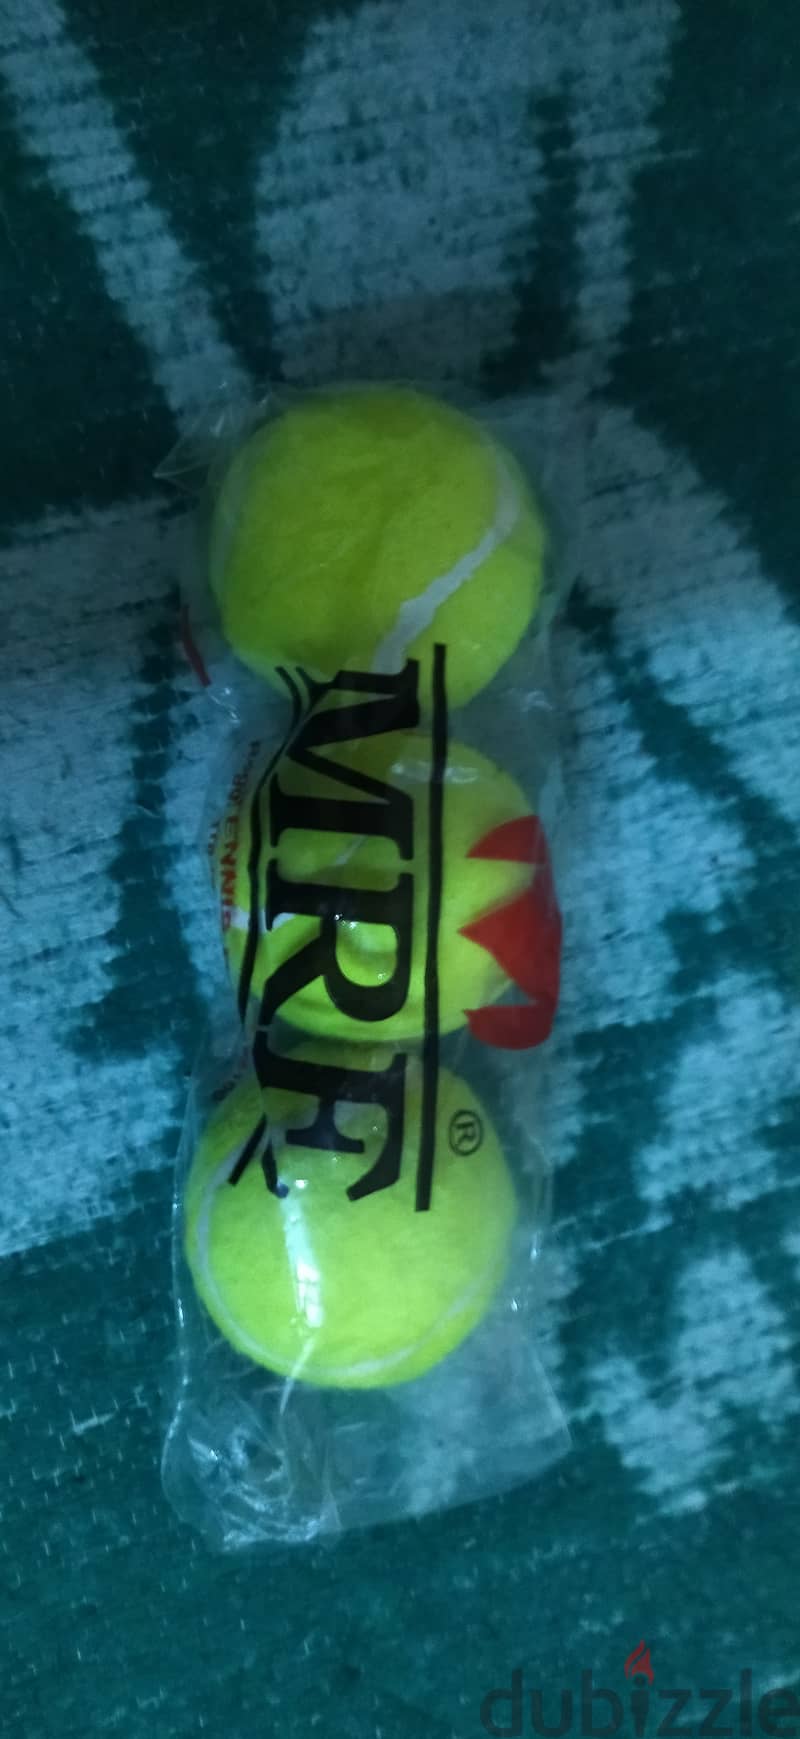 Tennis ball (3 piece ) 6